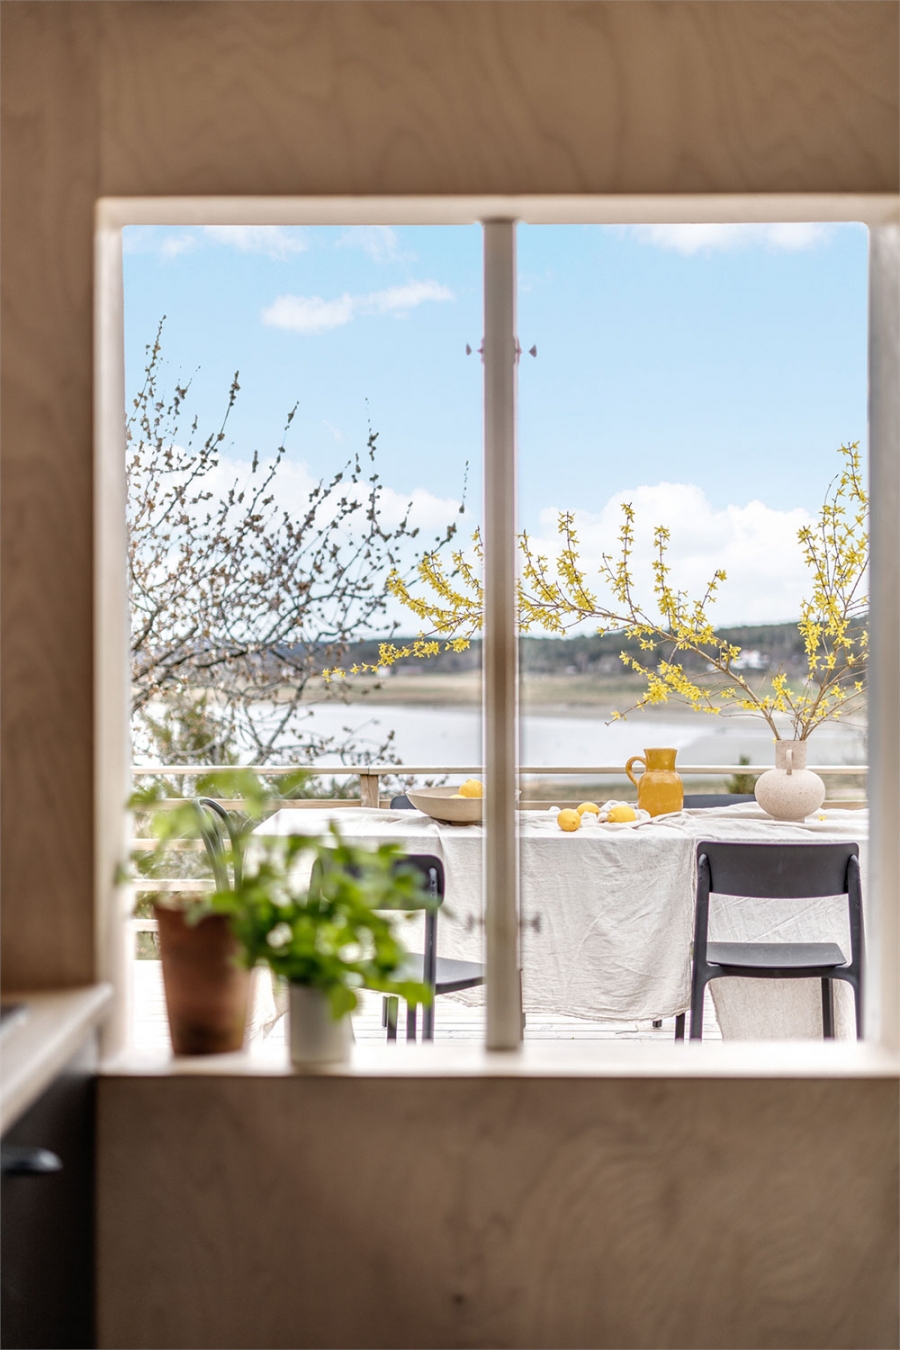 Bệ cửa sổ phòng bếp được trang trí bởi những chậu cây thảo mộc nhỏ. Từ cửa sổ này, bạn có thể phóng tầm mắt ngắm nhìn khu vực ăn uống ngoài trời giữa thiên nhiên tươi đẹp.